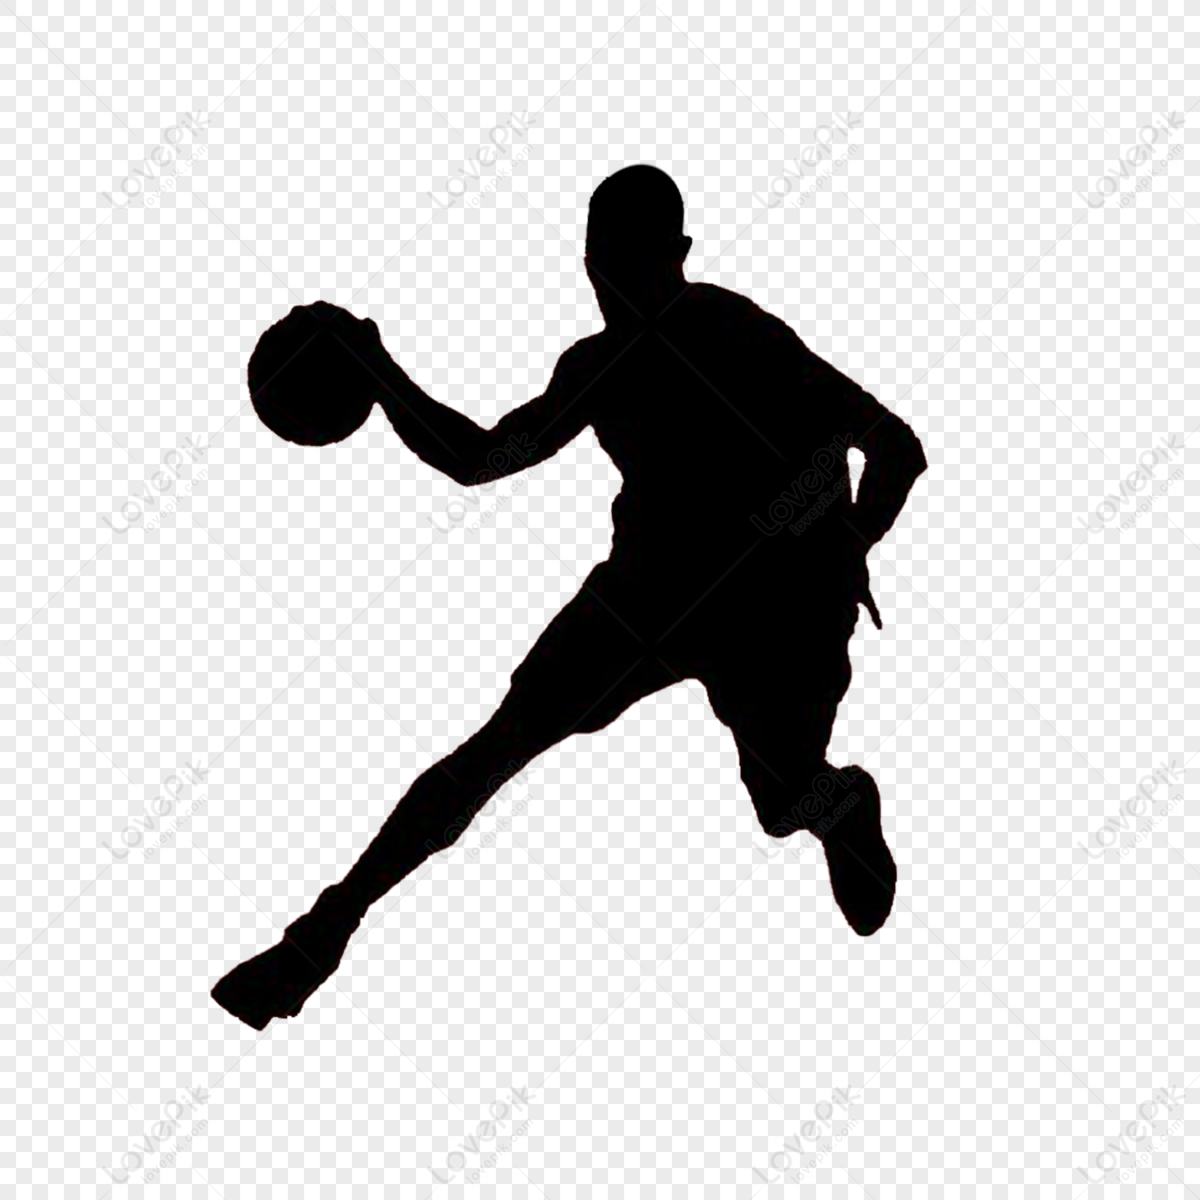 Basketball Players Silhouette, Characters, Basketball, Black Basketball ...